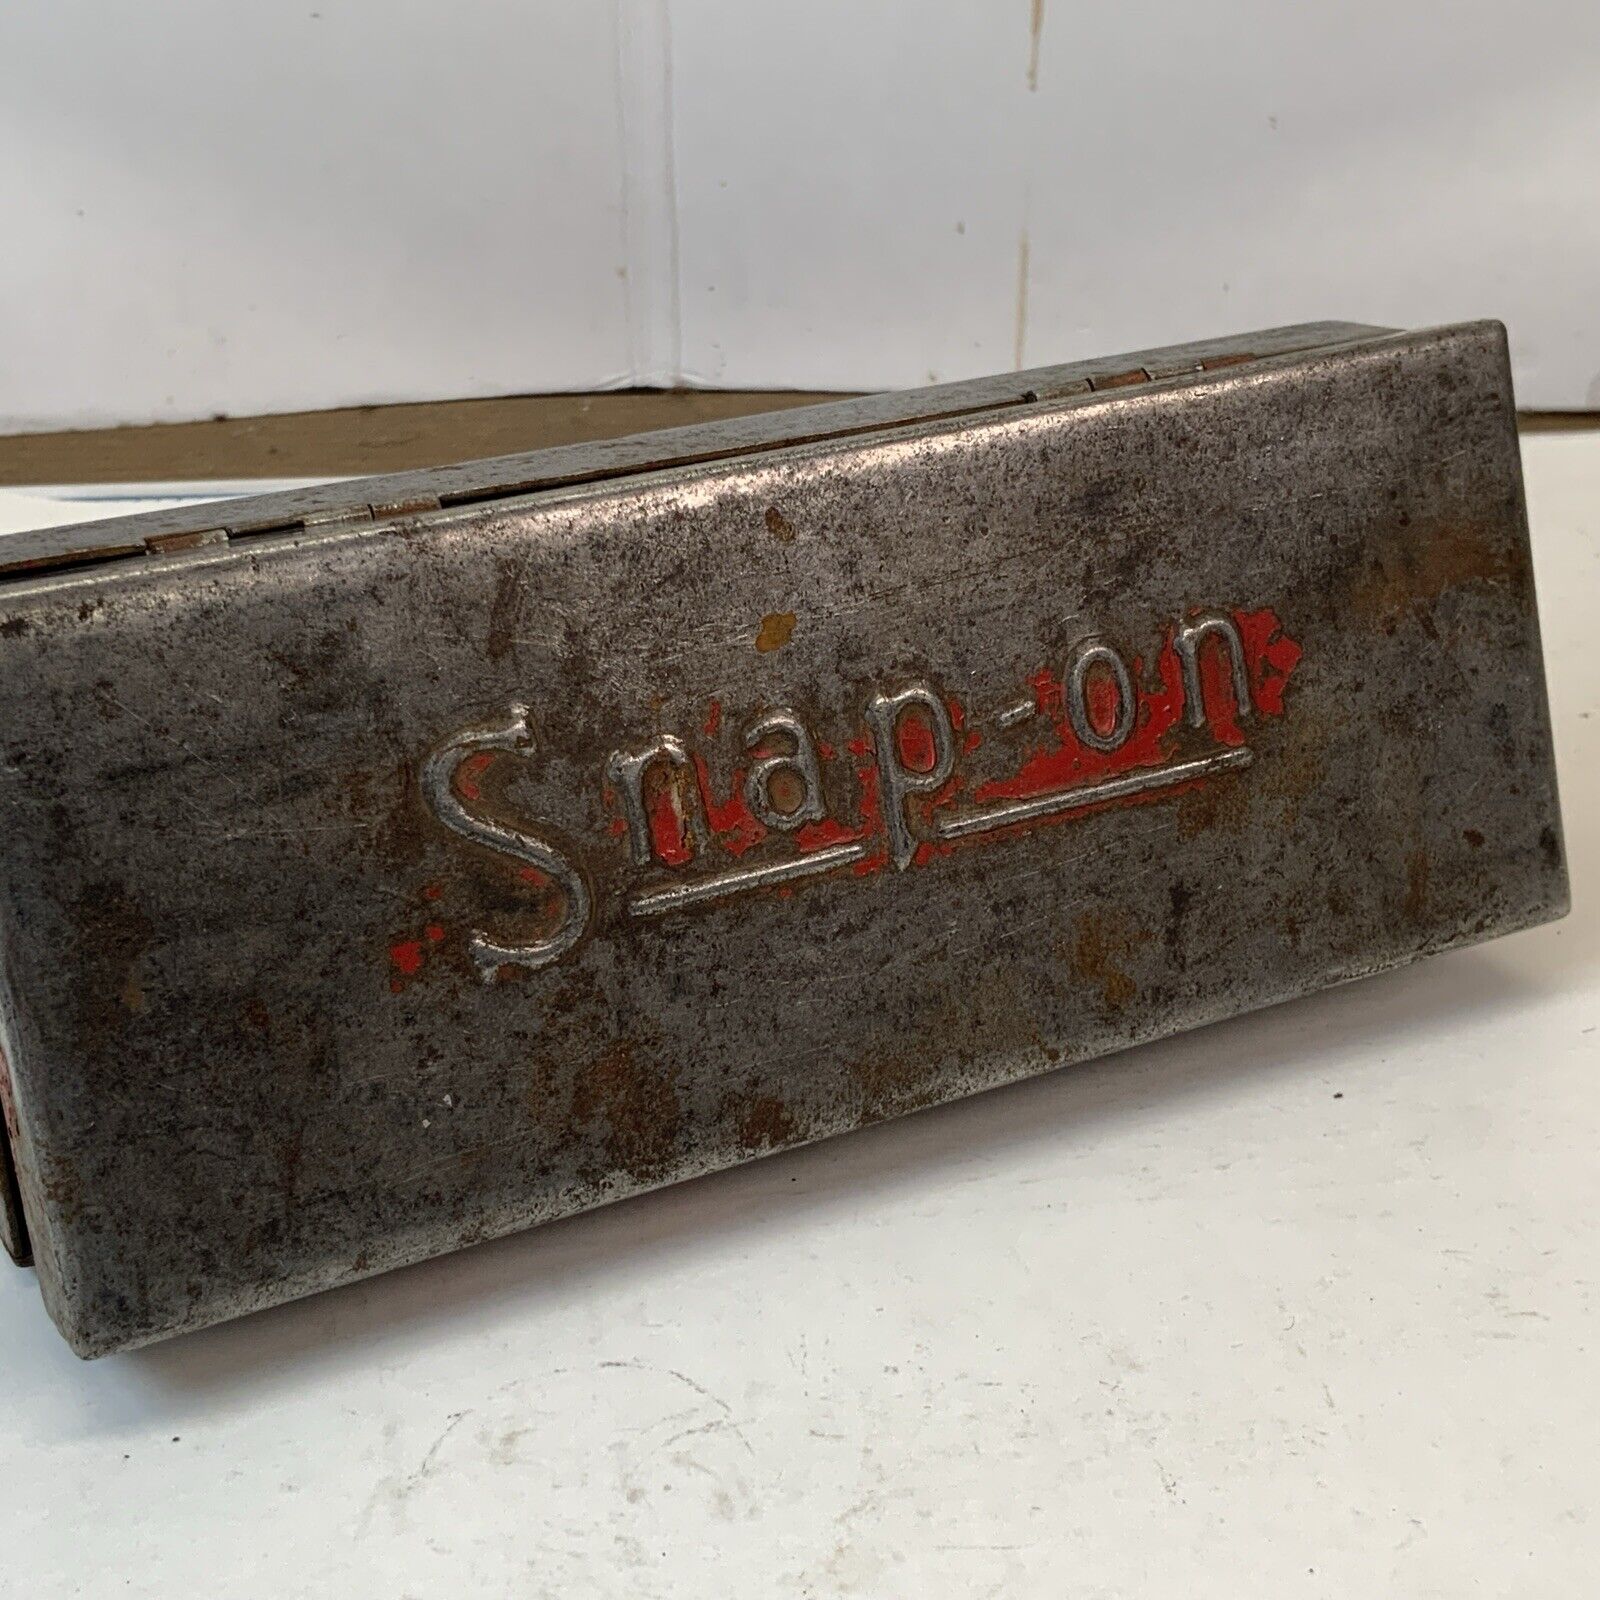 Vintage Snap On Metal Storage Box - Red Paint Worn Away